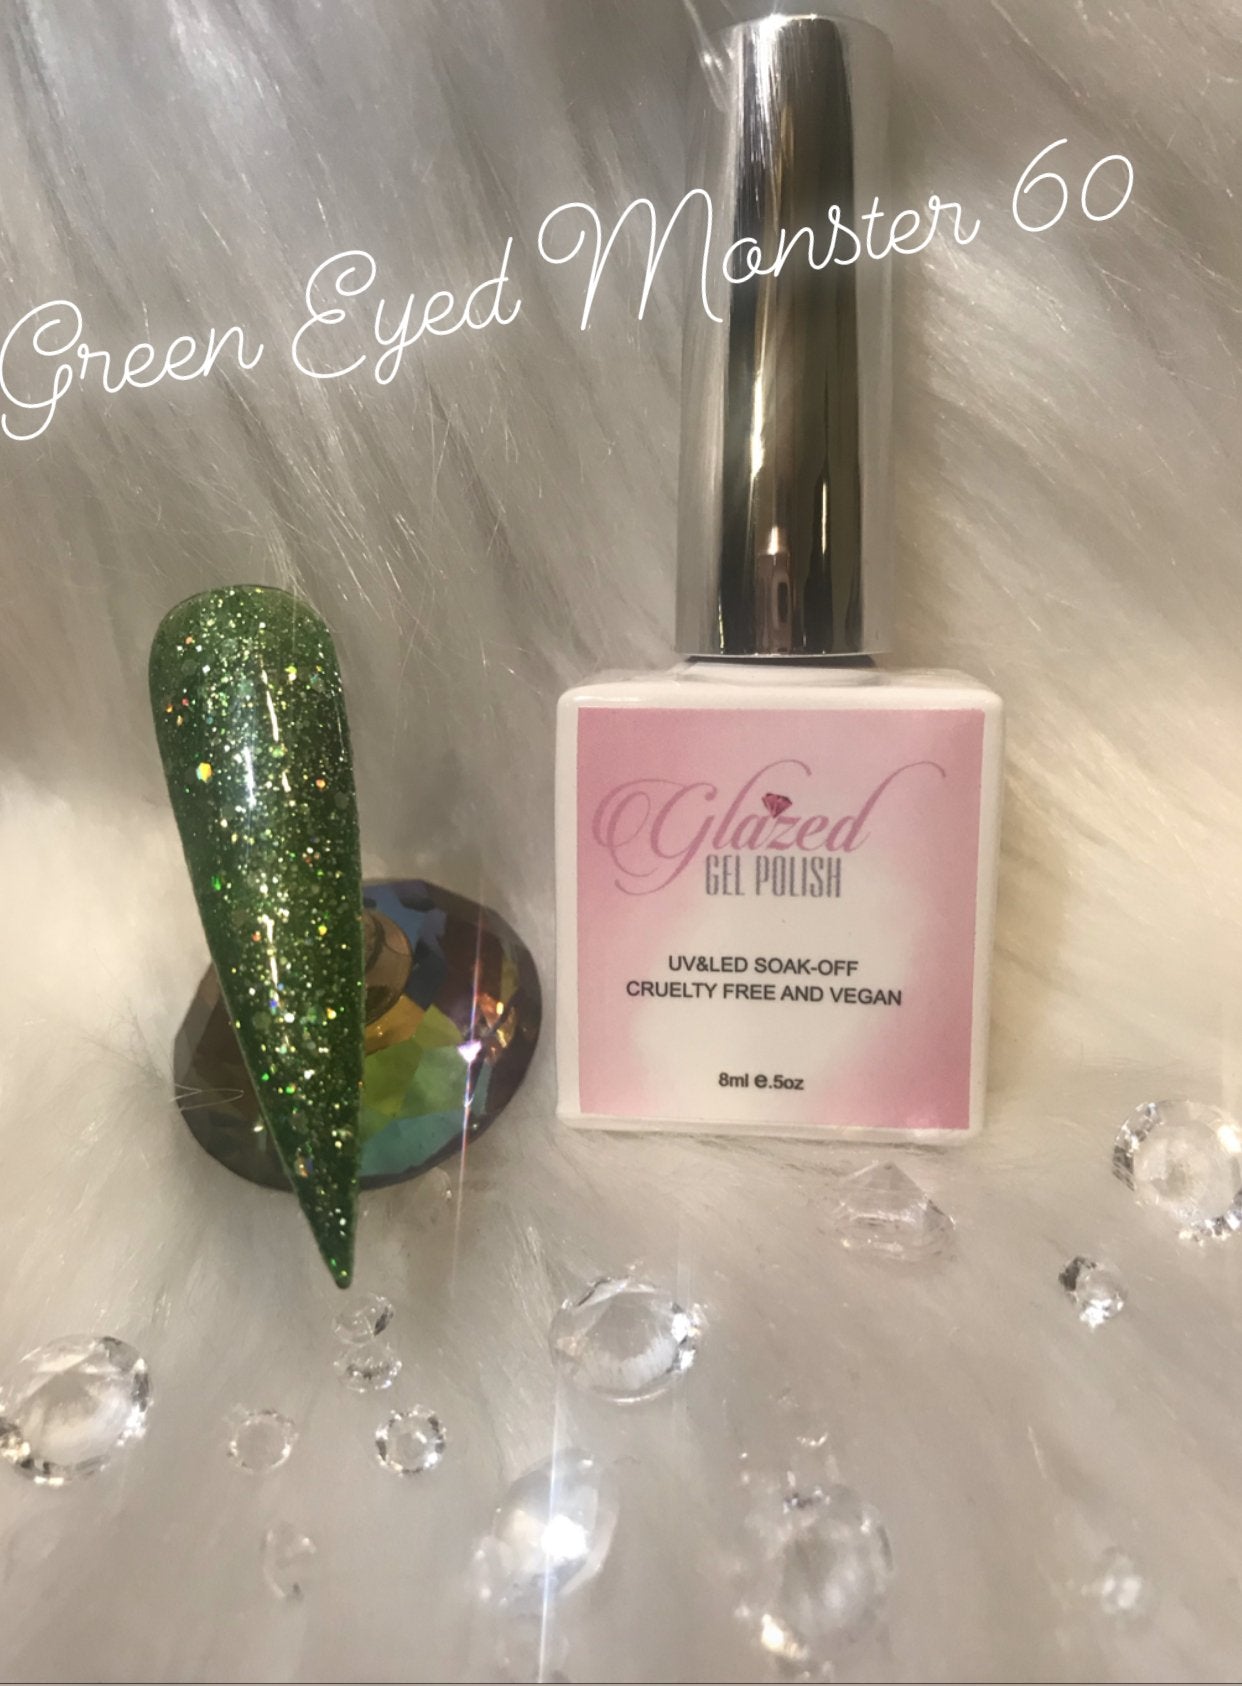 Green Eyed Monster Glazed Gel Polish 60